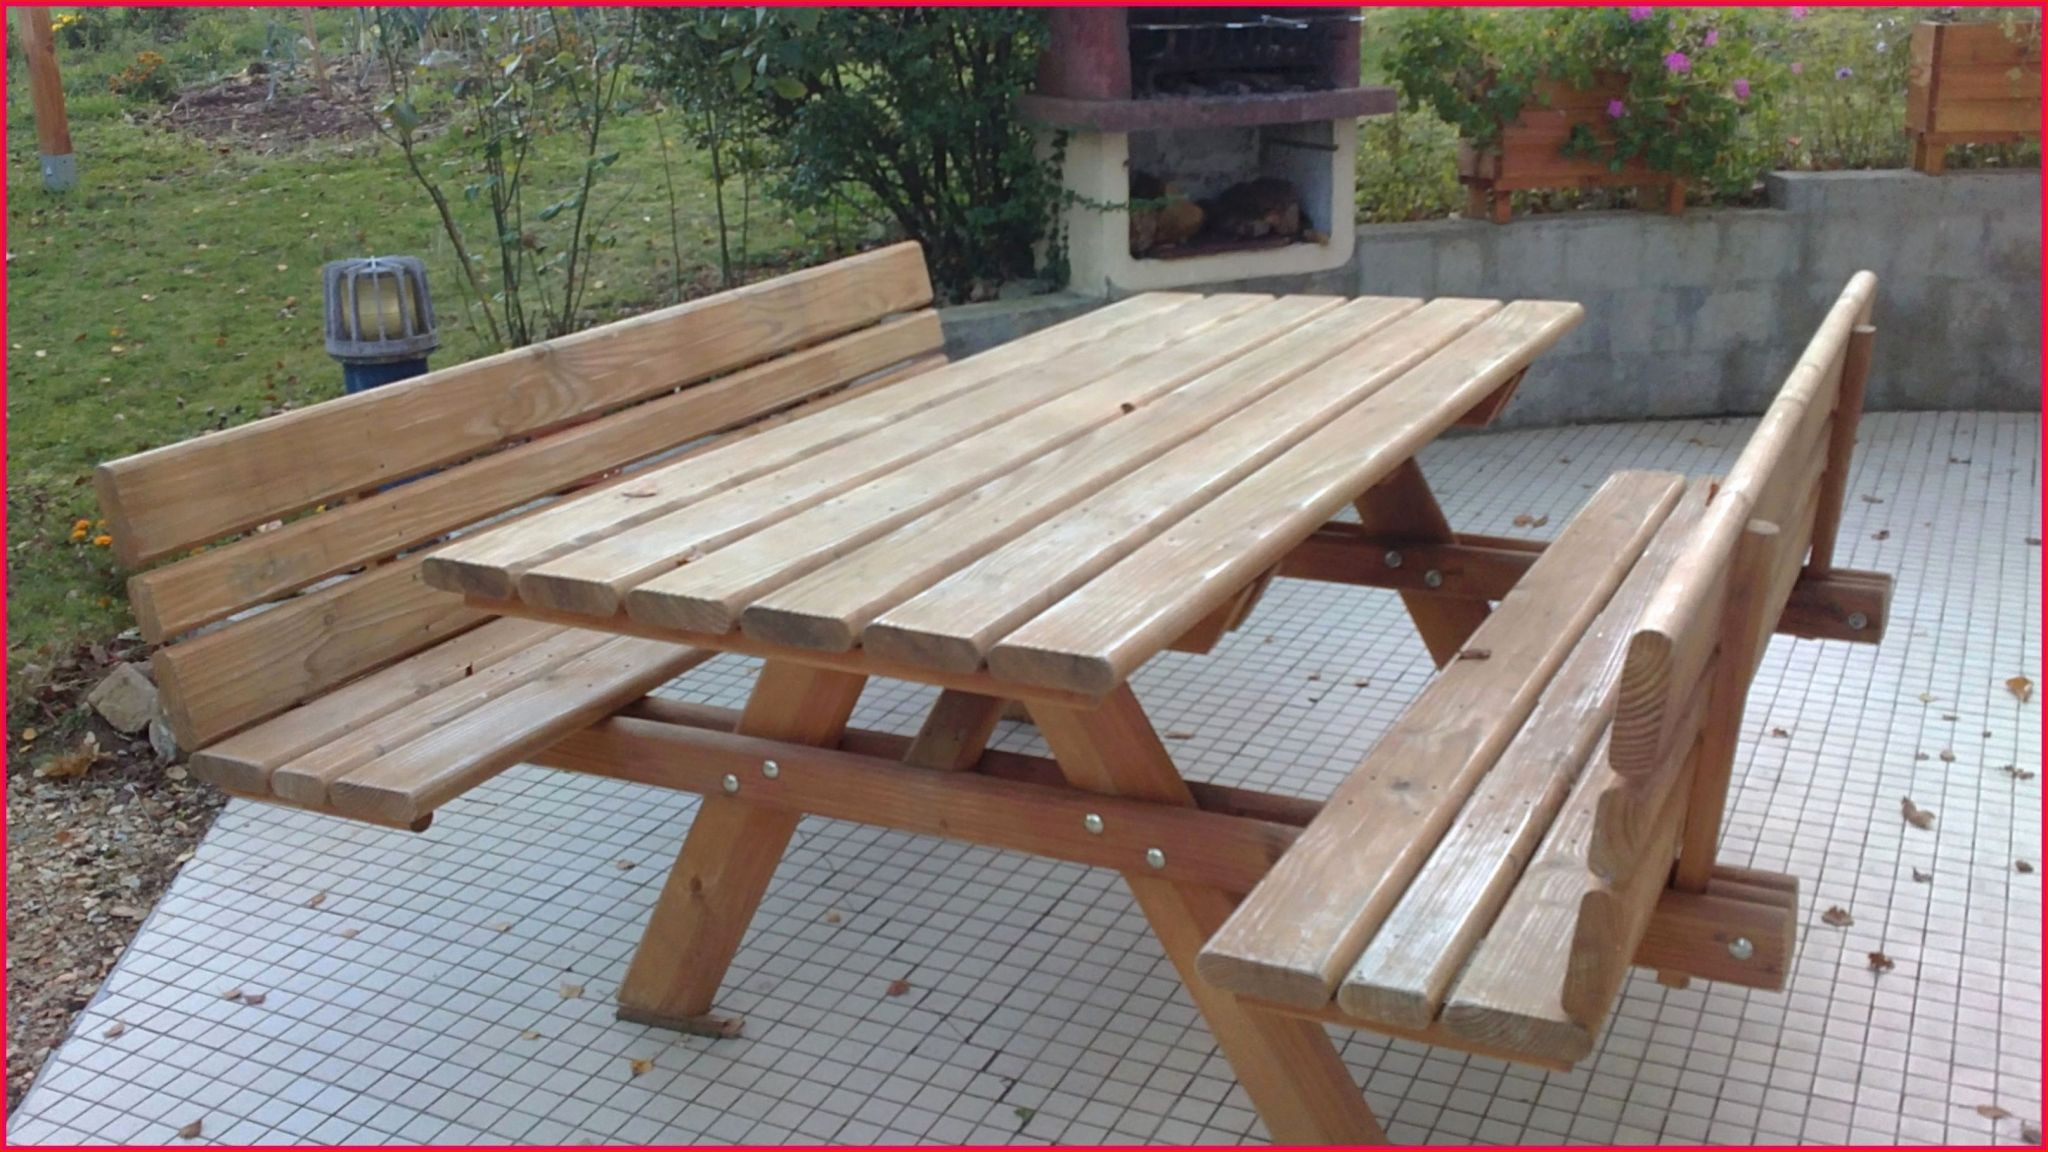 Table Avec Banc En Bois Inspirant Innovante Banc Pour Jardin Image De Jardin Décoratif